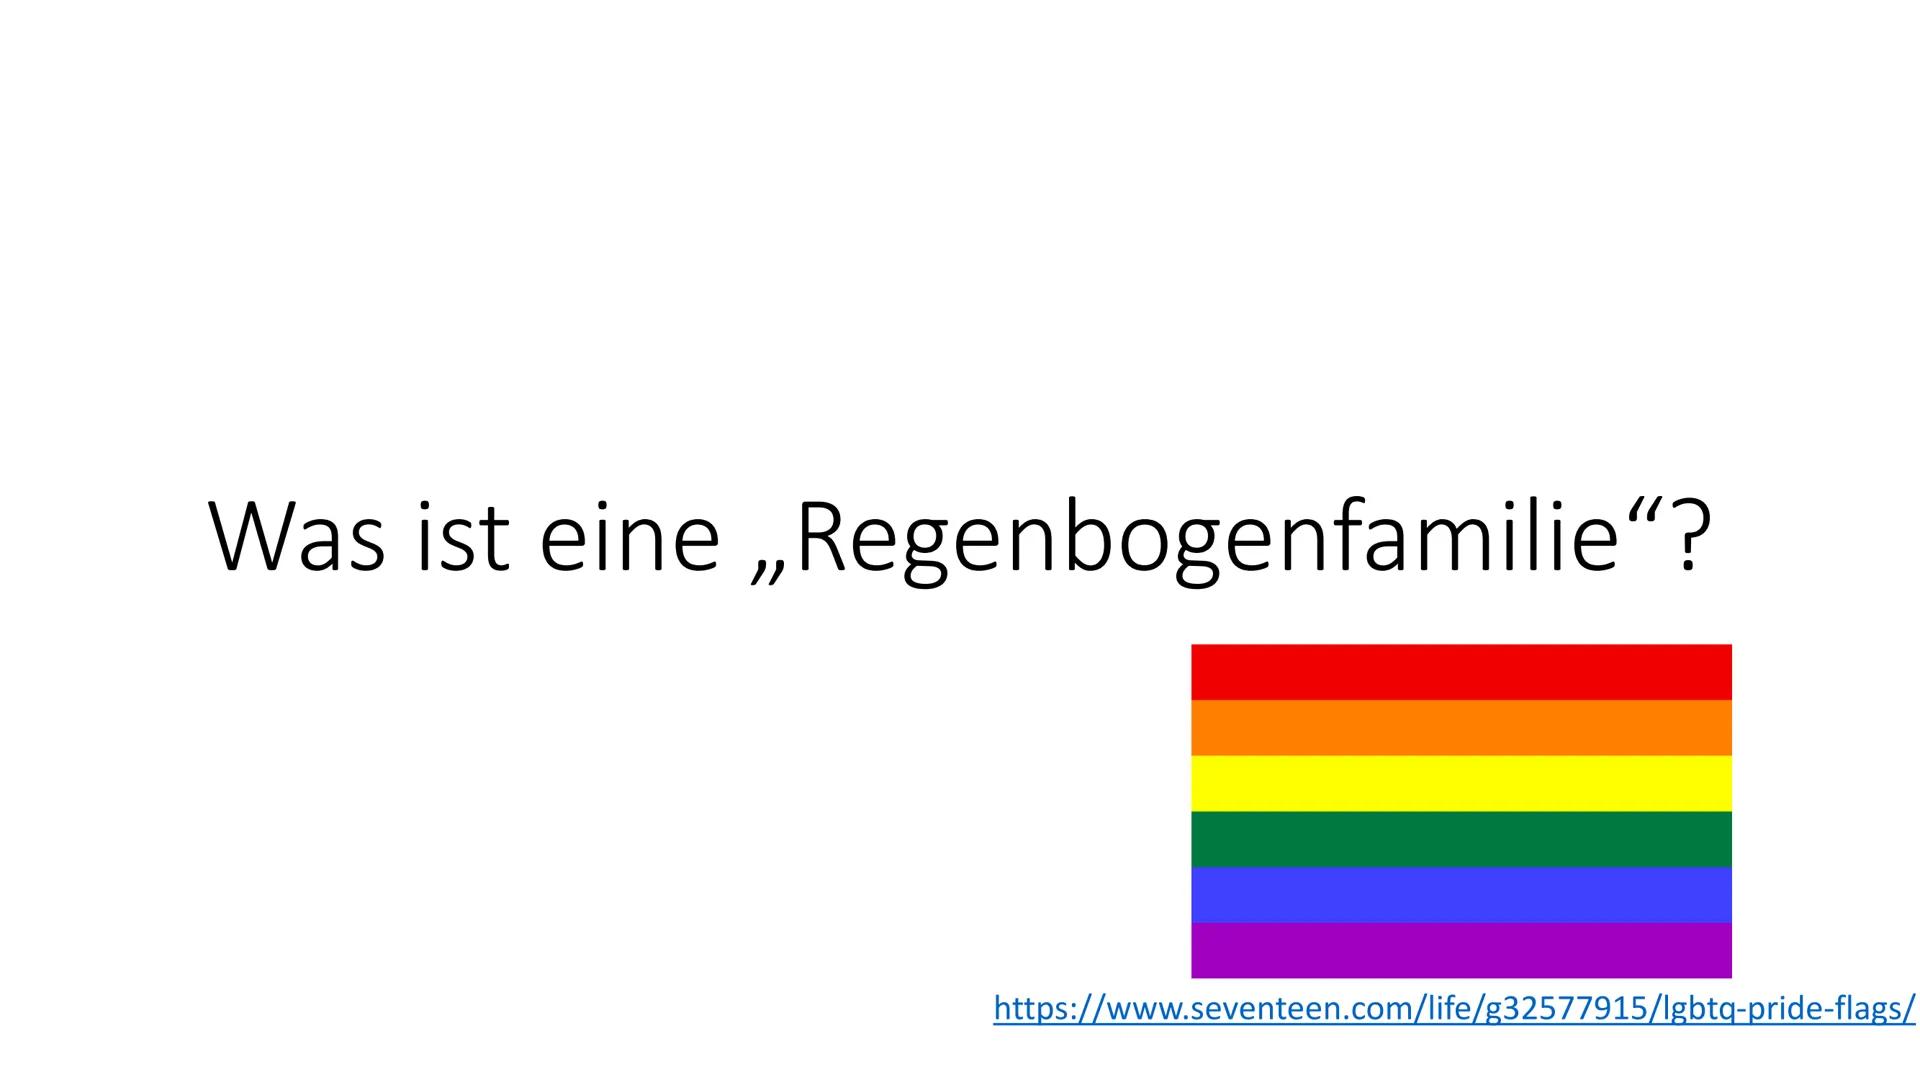 Regenbogenfamilien
von Definition:
Unter einer Regenbogenfamilie versteht man eine Familie, die aus gleichgeschlechtlichen Eltern und einem
